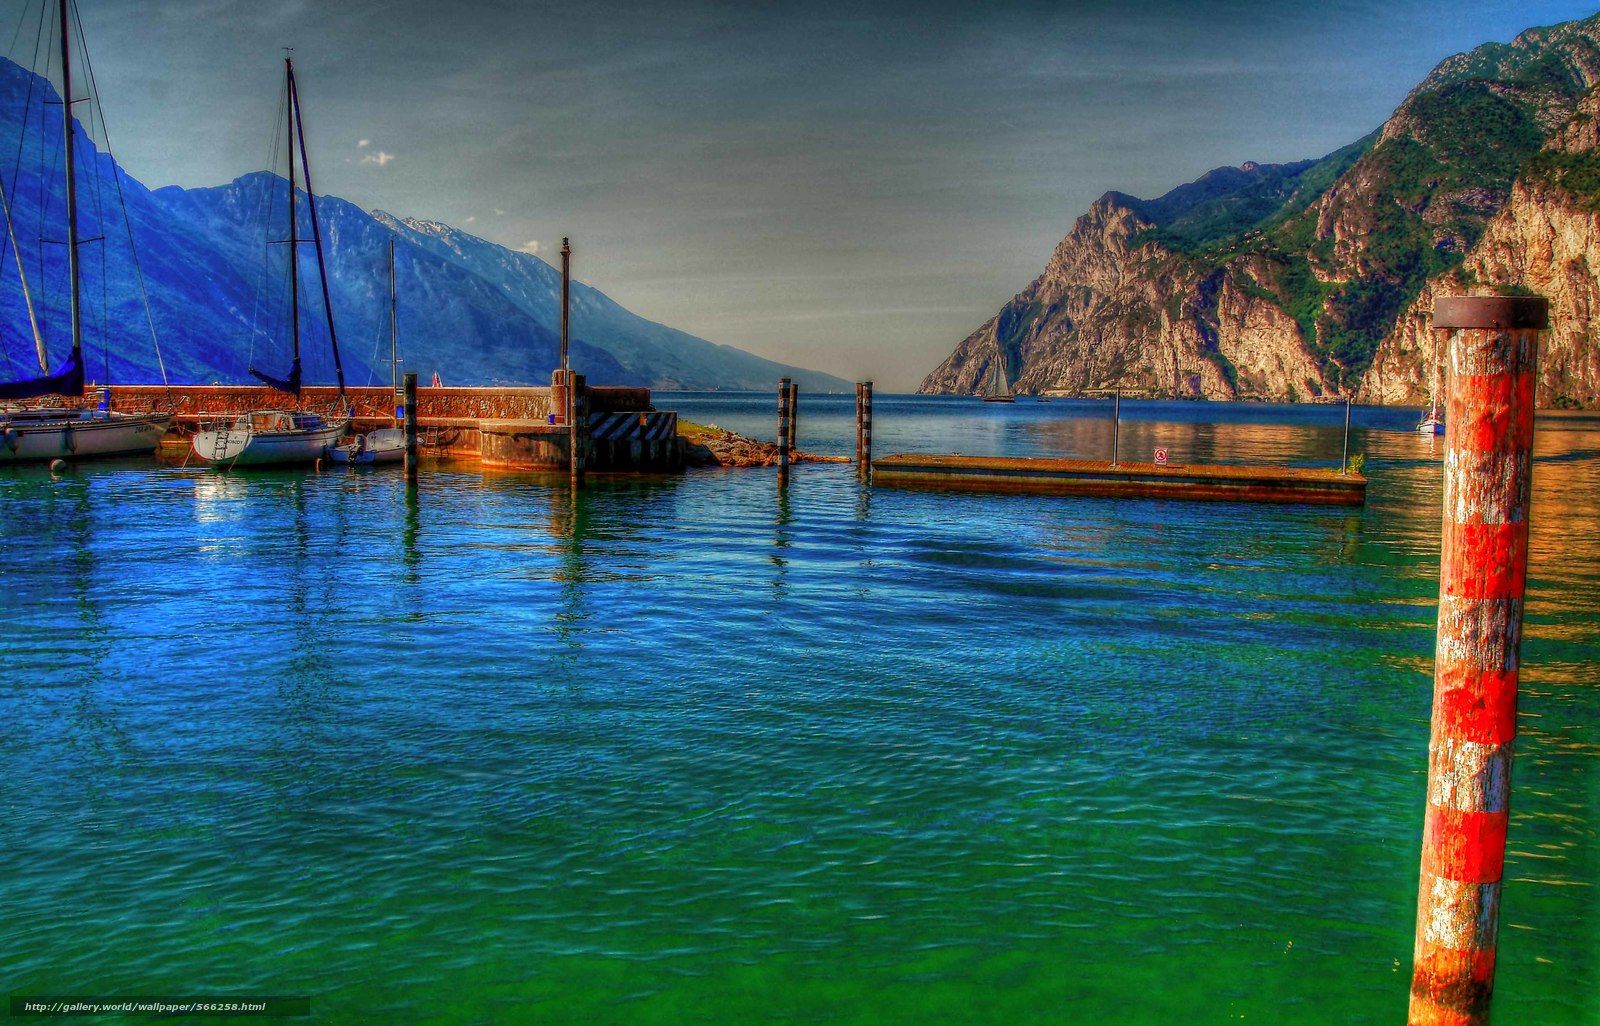 Download wallpaper LAKE GARDA, Italy, landscape free desktop